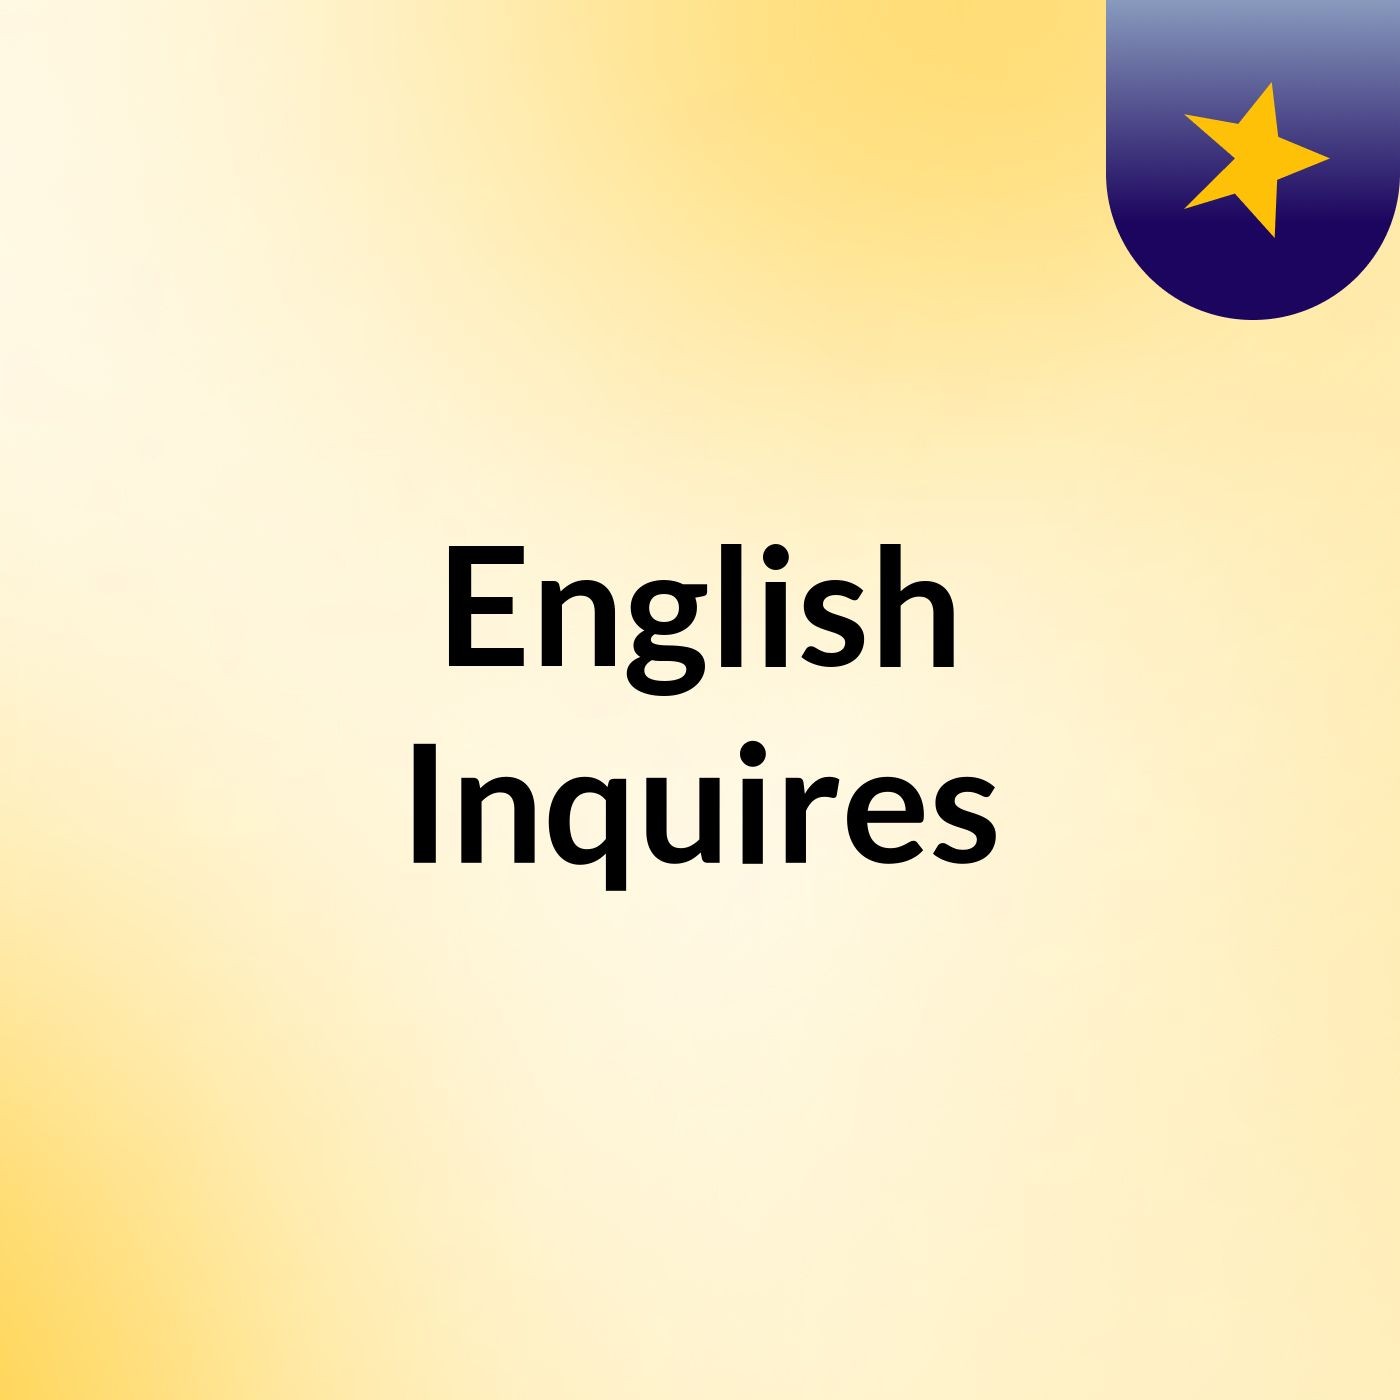 English Inquires